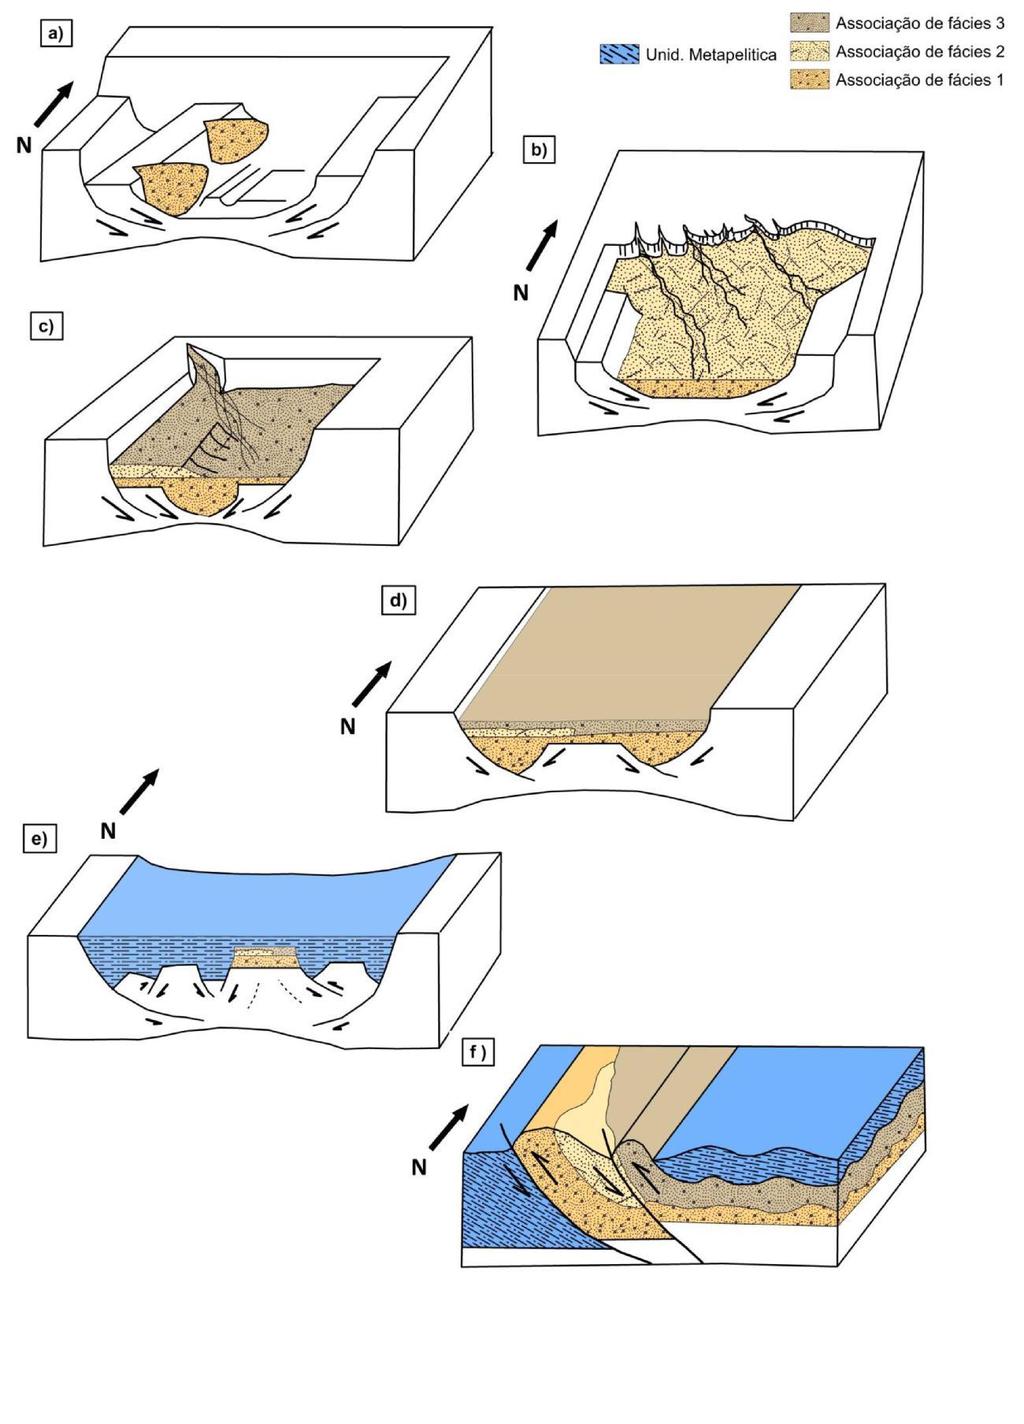 Santos, A. L. A., 2018. Arcabouço estrutural e estratigráfico da Formação Moeda (Supergrupo... Figura 35:a) Bloco diagrama esquemático da deposição da Alf 1.